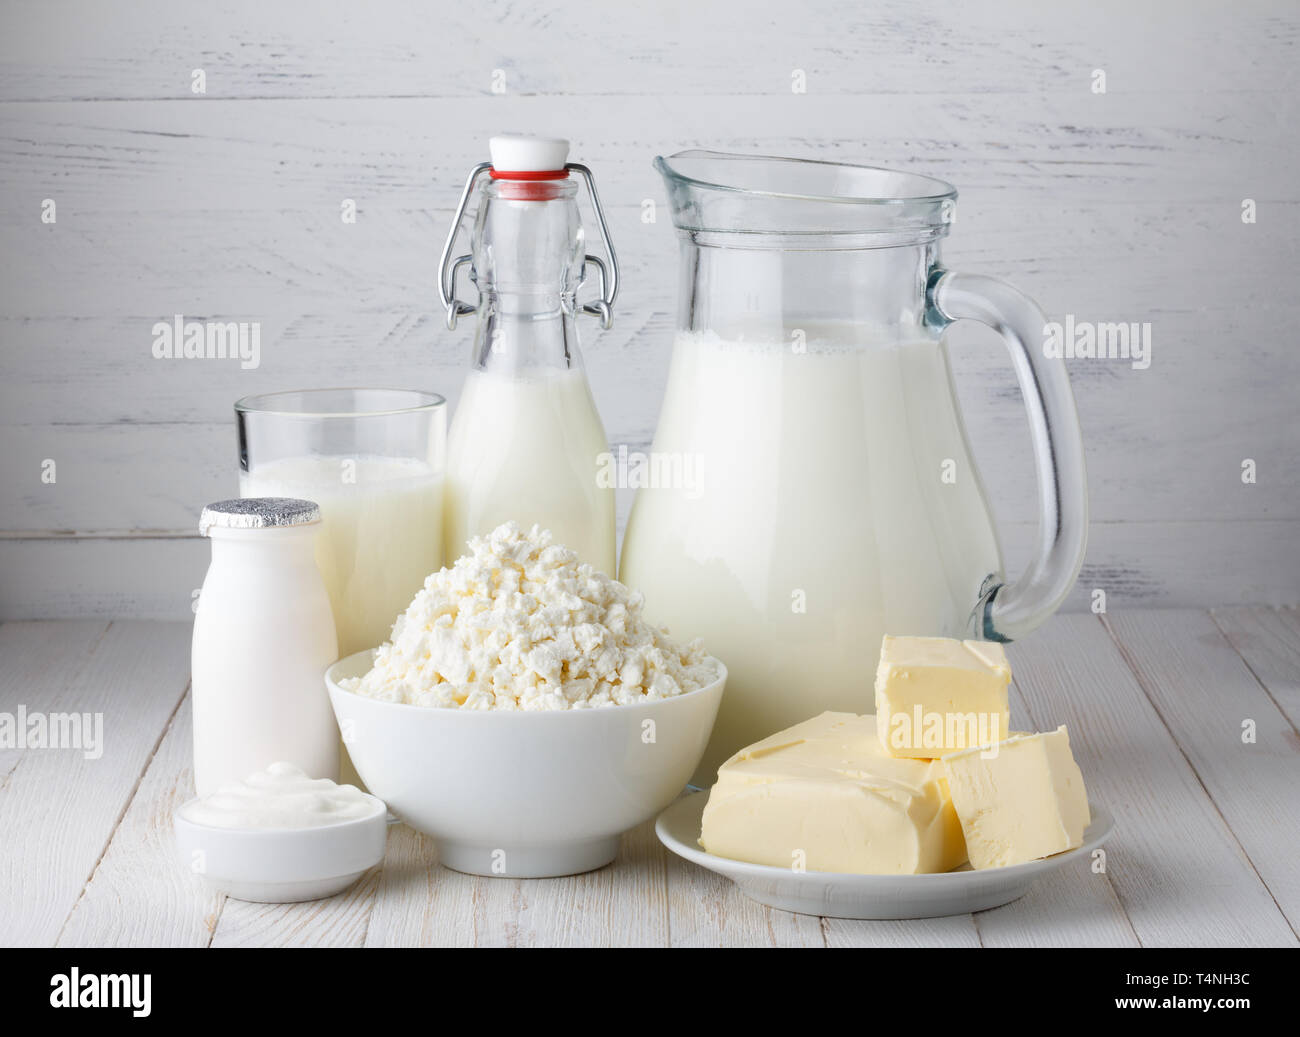 Les produits laitiers, lait, fromage cottage, yogourt, crème sure et du beurre sur table en bois Banque D'Images